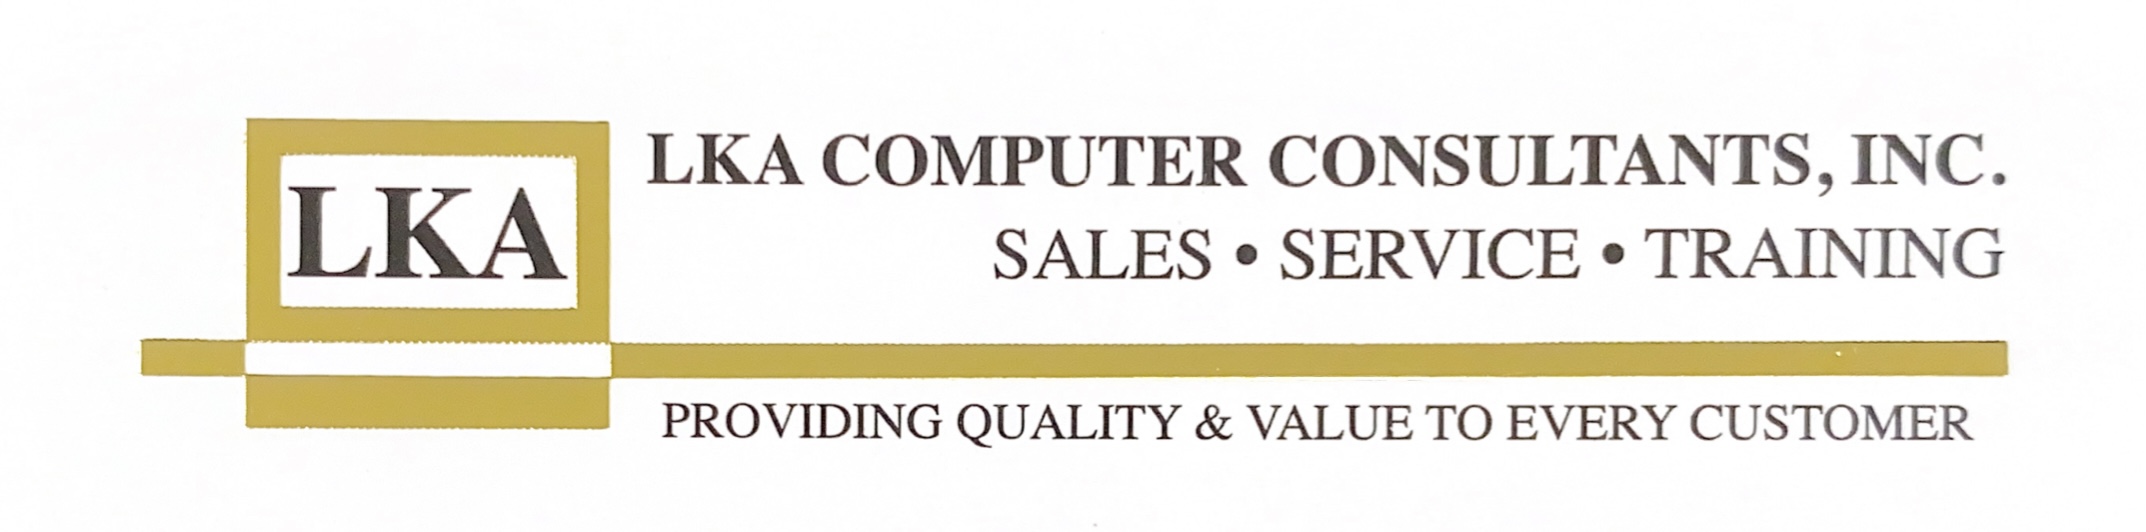 LKA Computer Consultants, Inc